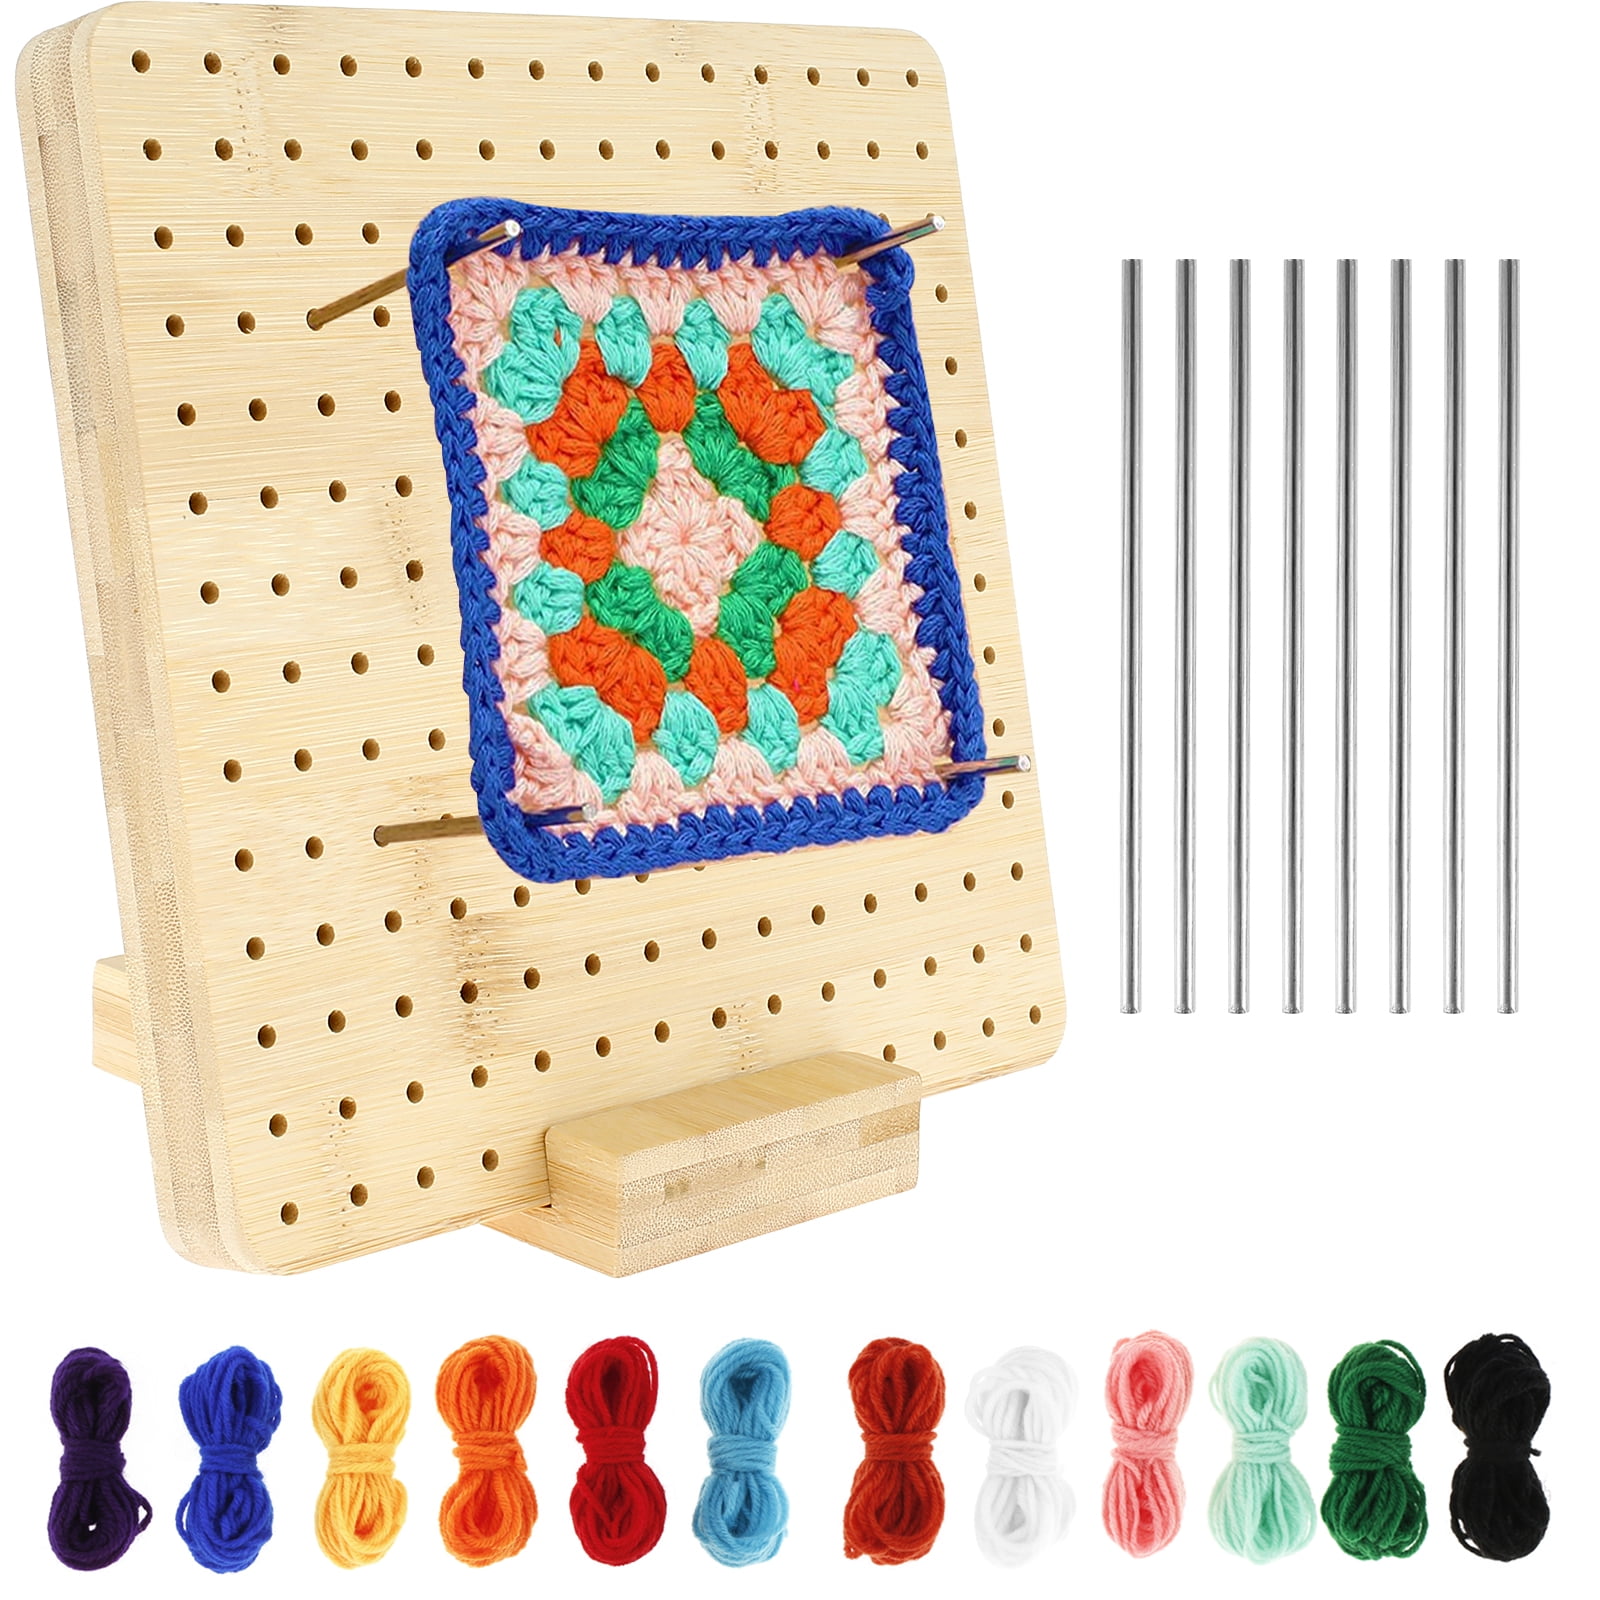 Blocking Board. Sturdy Wooden Crochet Blocking Board.granny Square